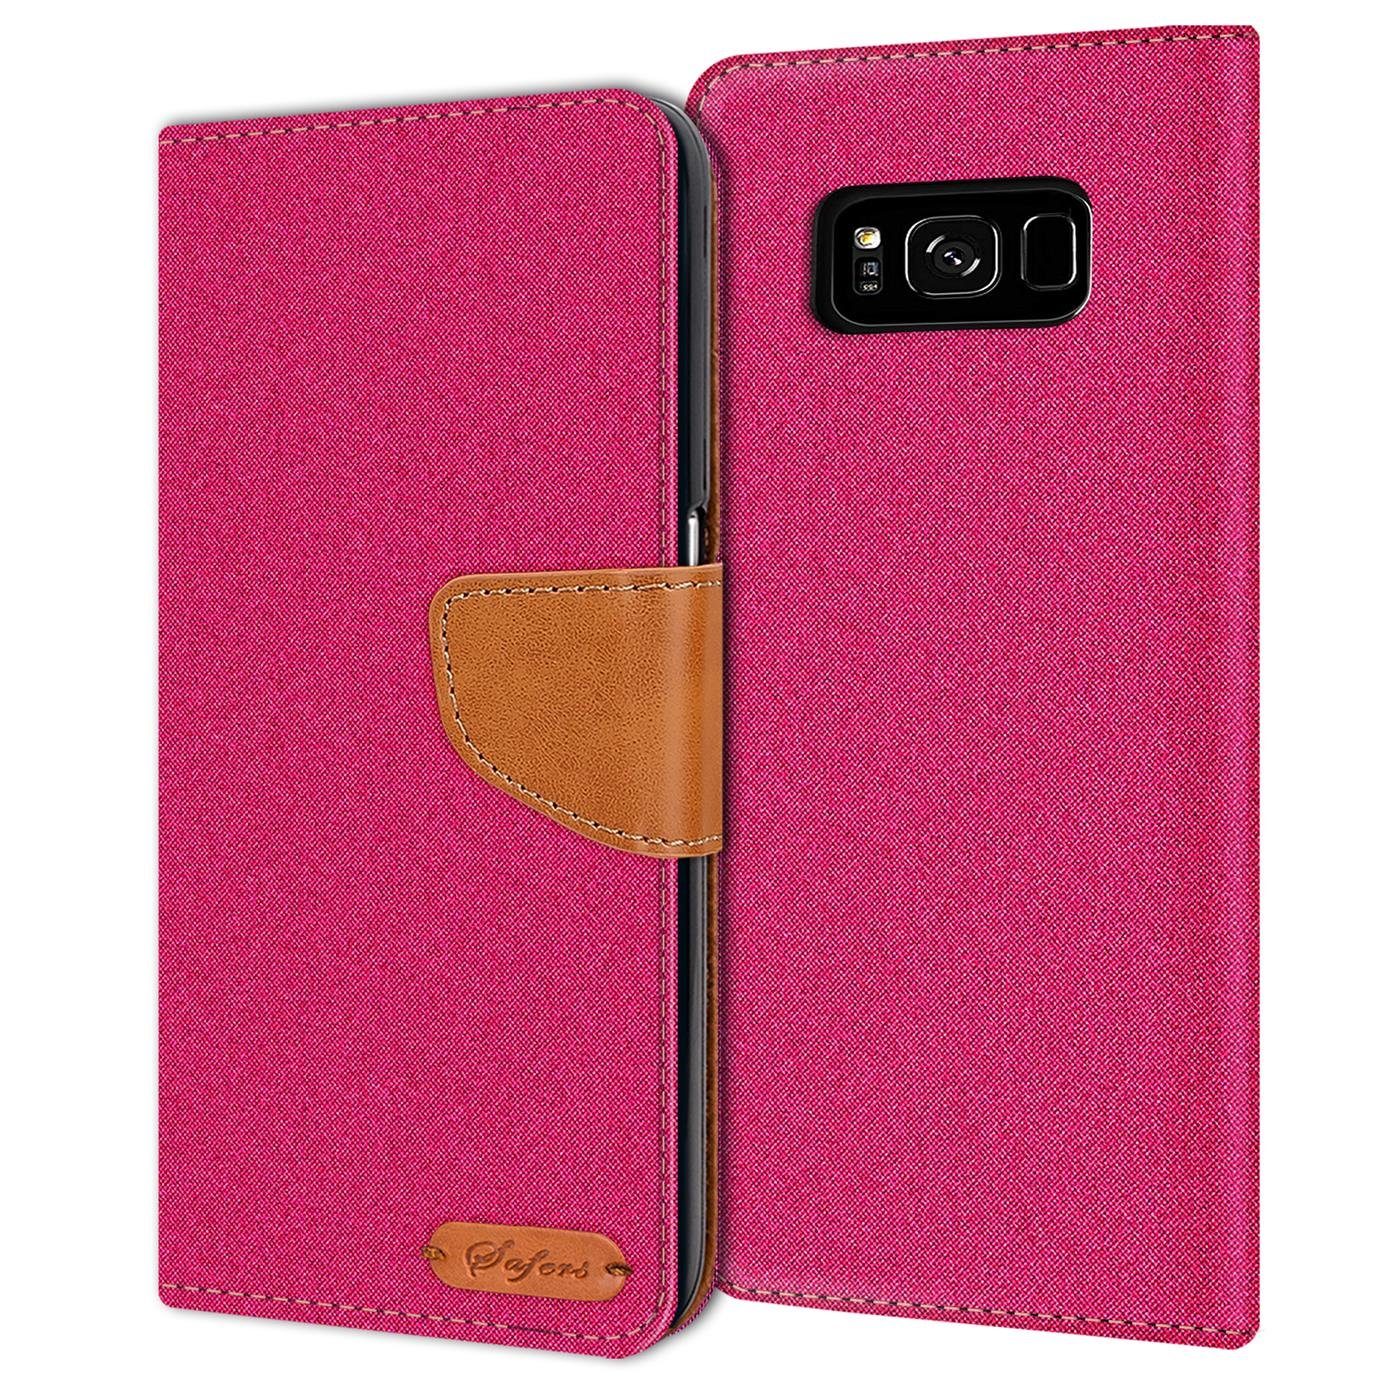 CoolGadget Handyhülle »Denim Schutzhülle Flip Case« für Samsung Galaxy S8  5,8 Zoll, Book Cover Handy Tasche Hülle für Samsung S8 Klapphülle online  kaufen | OTTO